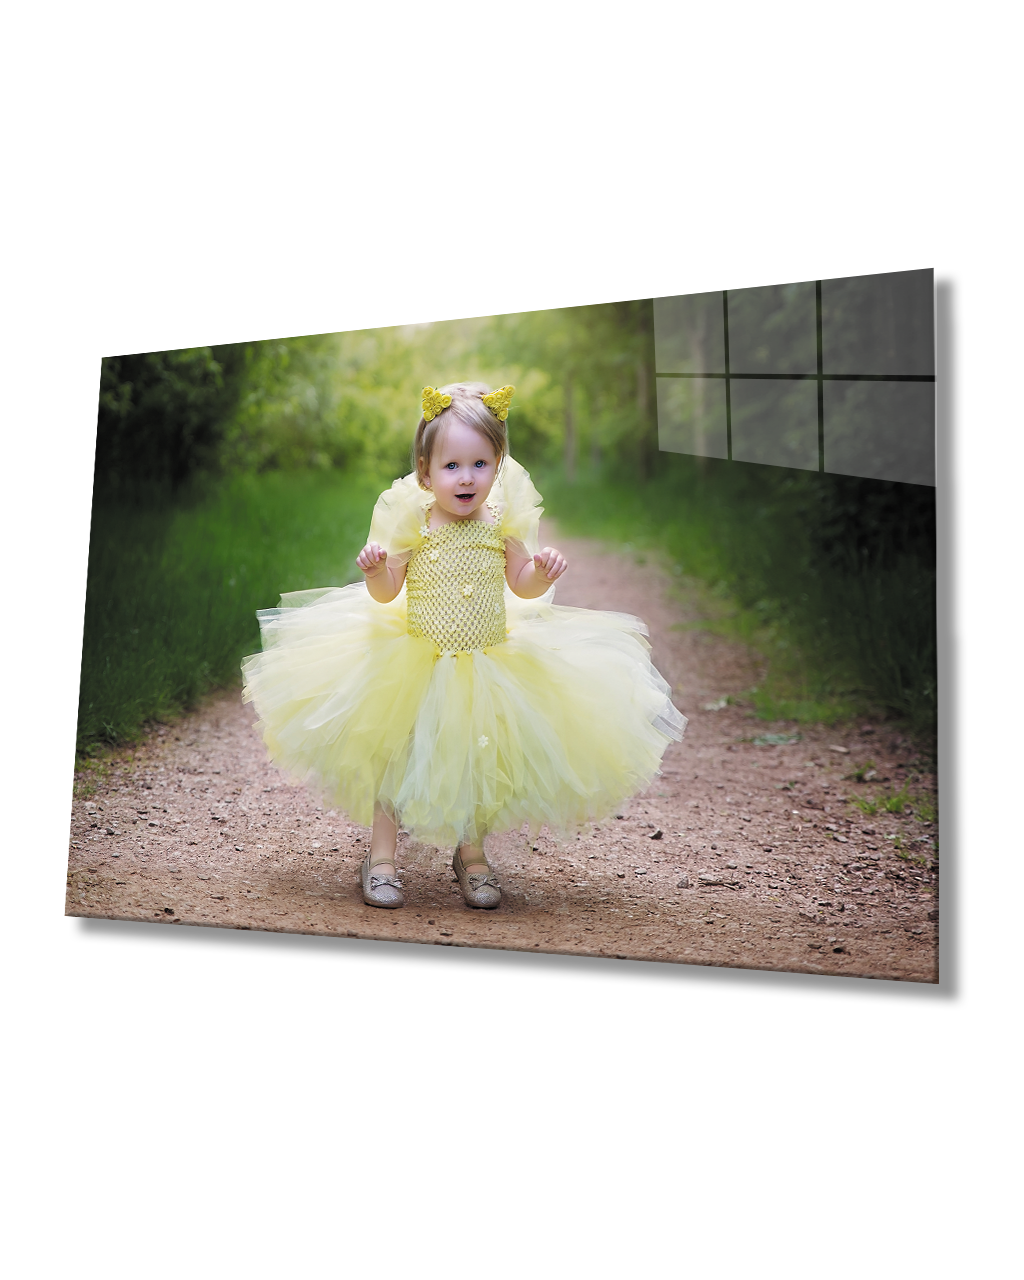 Sarı Elbiseli Çocuk Cam Tablo  4mm Dayanıklı Temperli Cam Child in Yellow Dress Glass Table 4mm Durable Tempered Glass